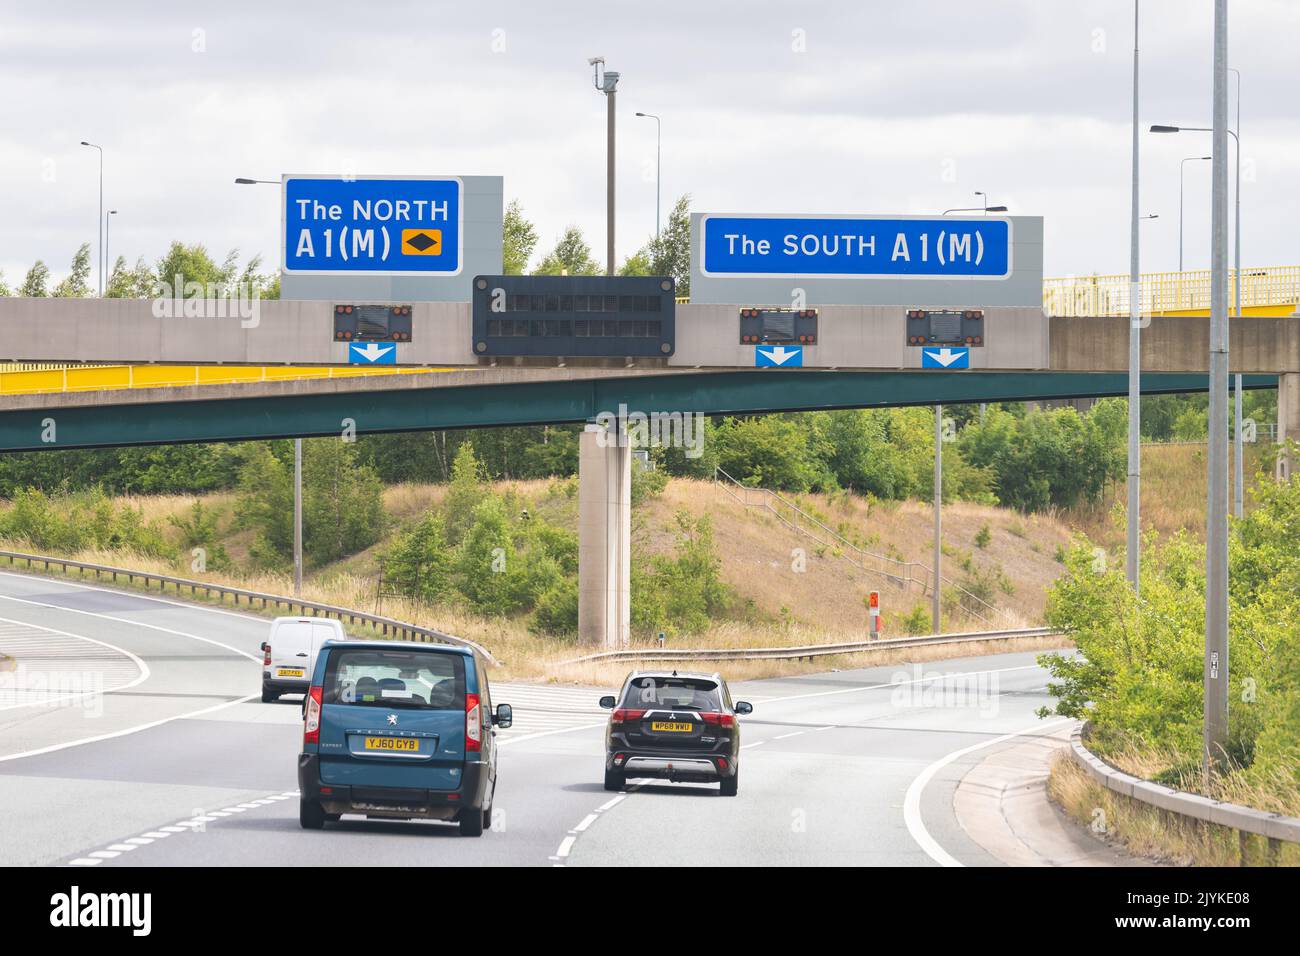 L'autoroute du Nord au Sud signe la sortie 41 de la A1(M) et la sortie 32A de la M62 près de Ferrybridge, West Yorkshire, Angleterre, Royaume-Uni Banque D'Images